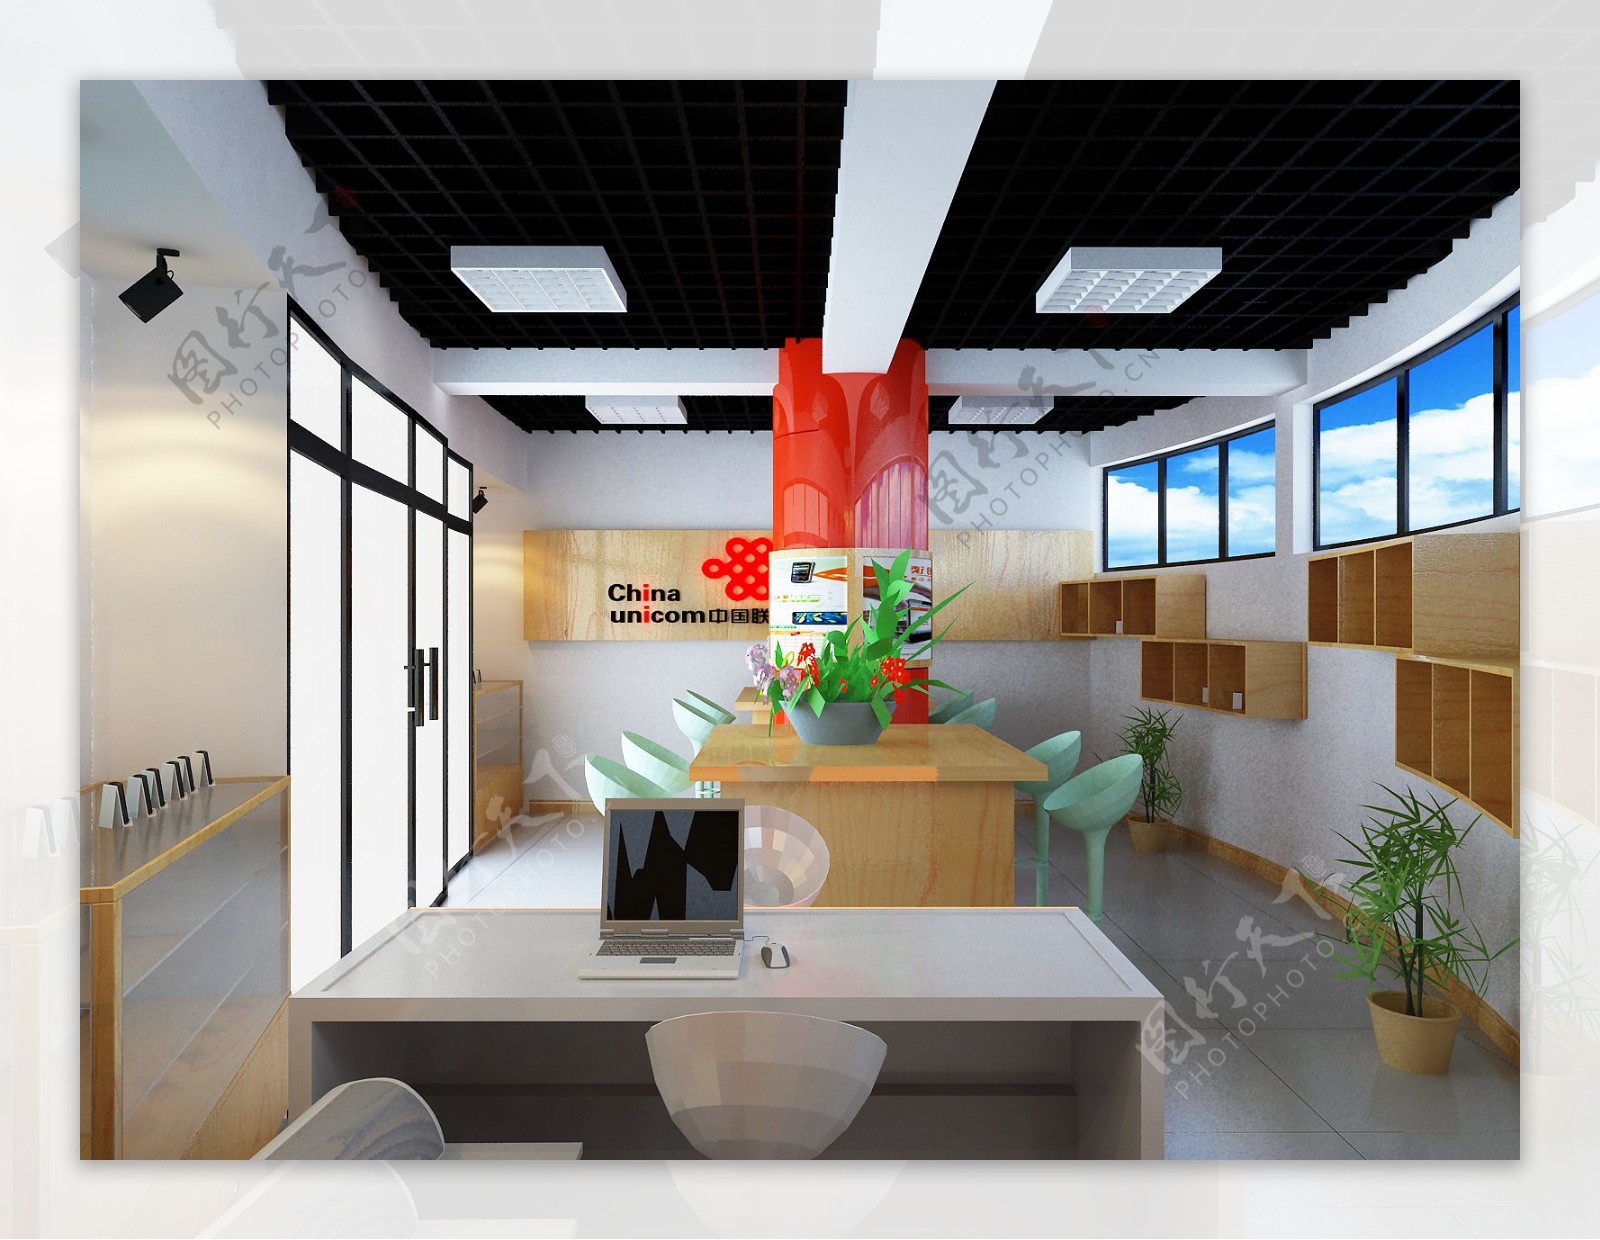 一张原创联通营业厅的室内设计效果图